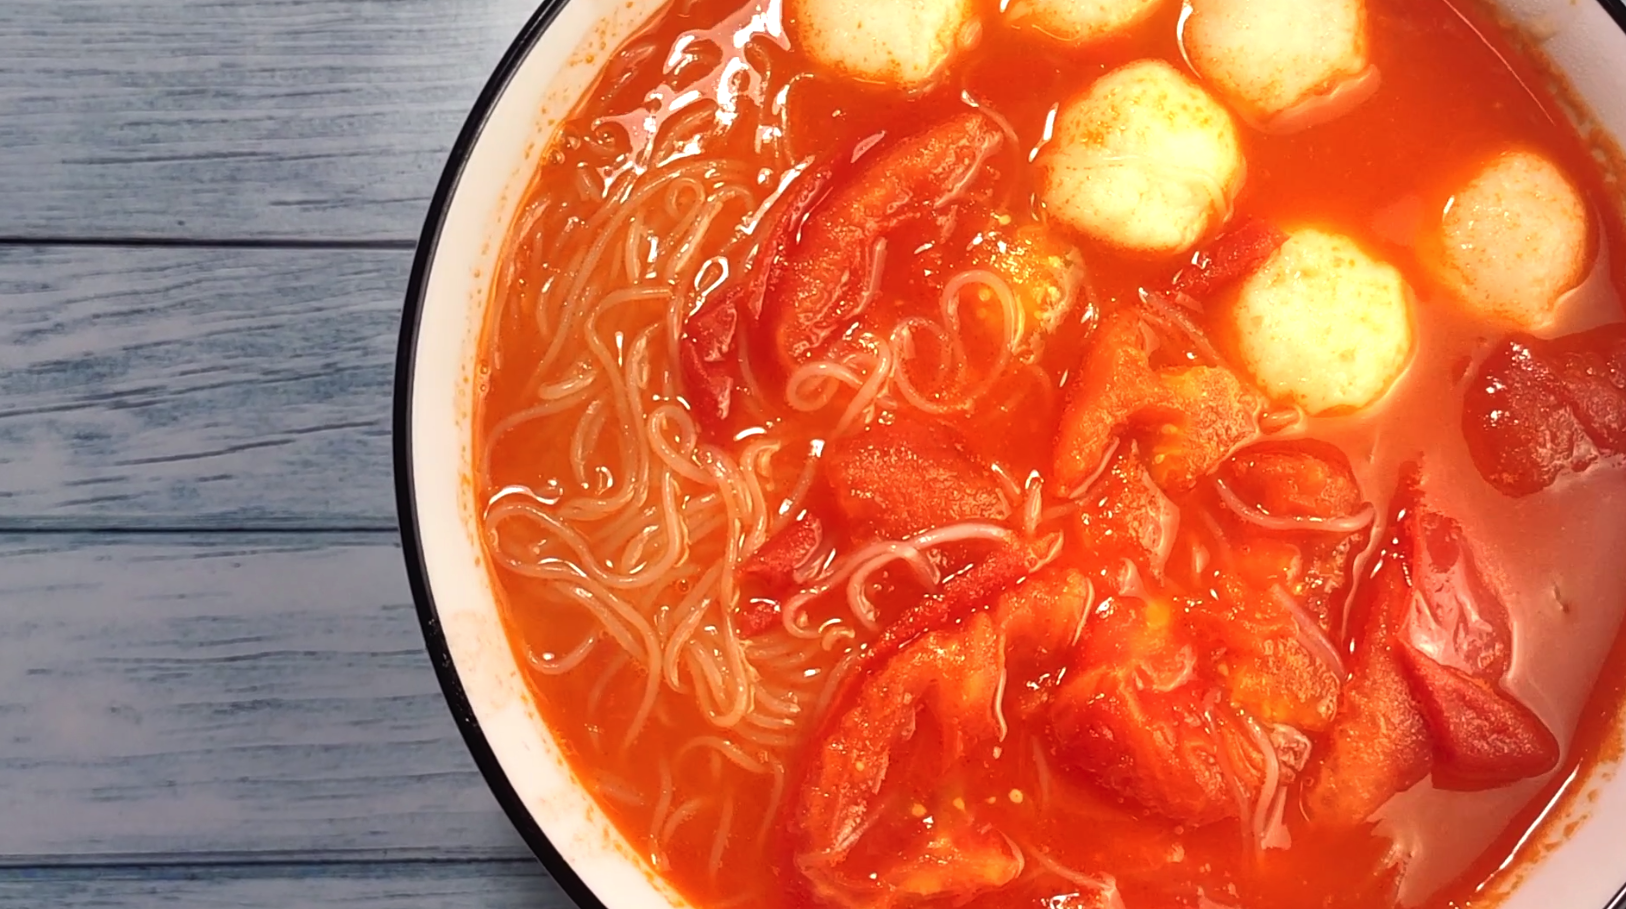 番茄粉丝鱼丸汤怎么做?美味健康又好吃!